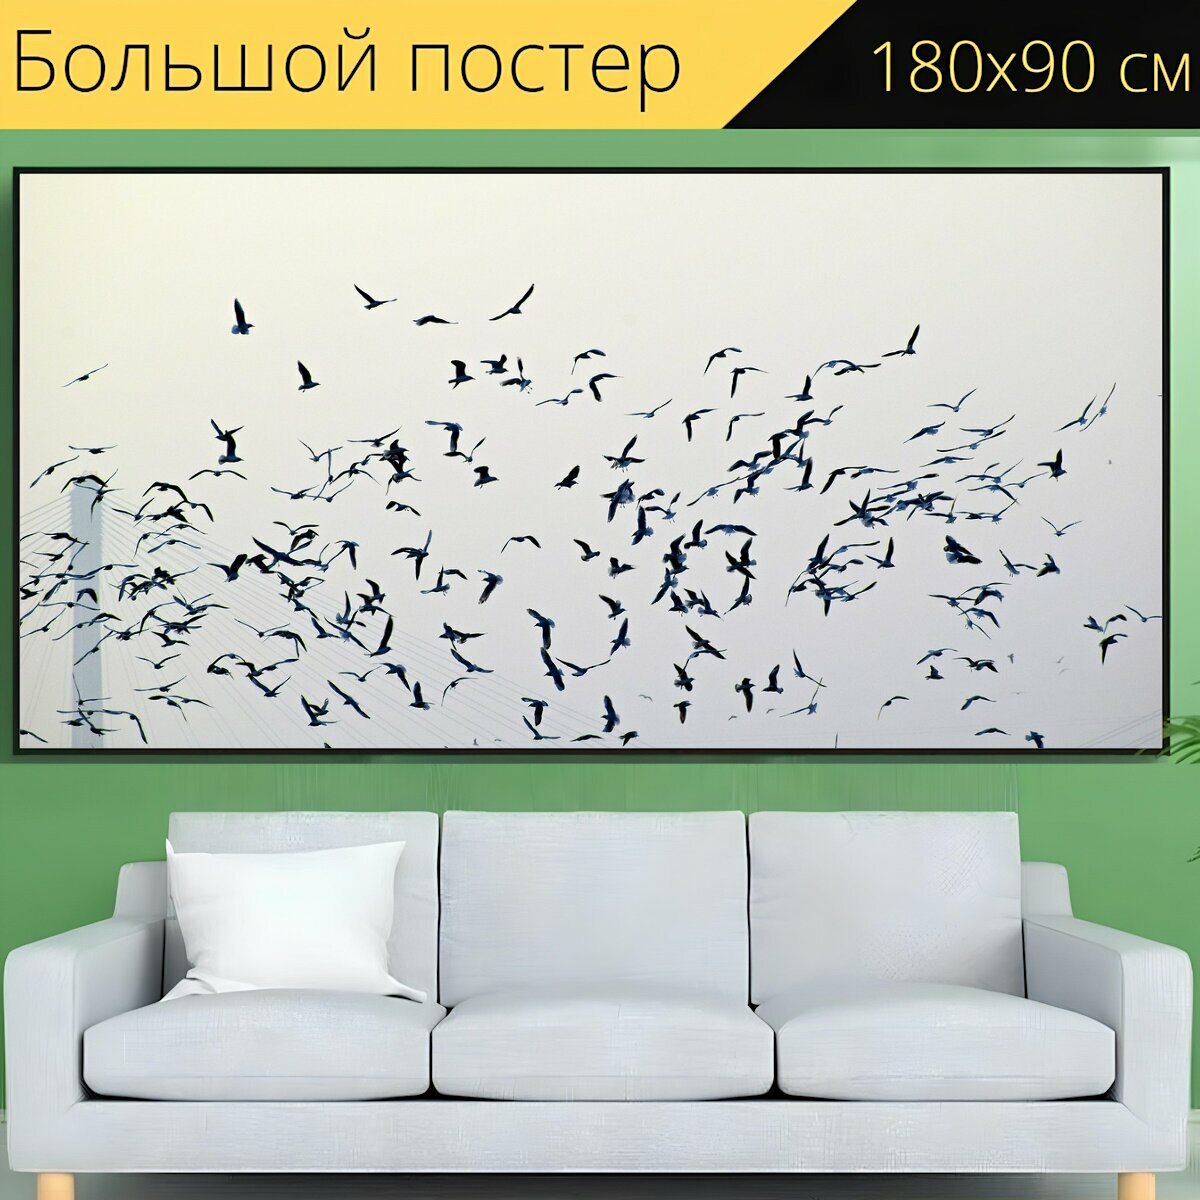 Большой постер "Птиц стая, летающие птицы, чаек стая" 180 x 90 см. для интерьера